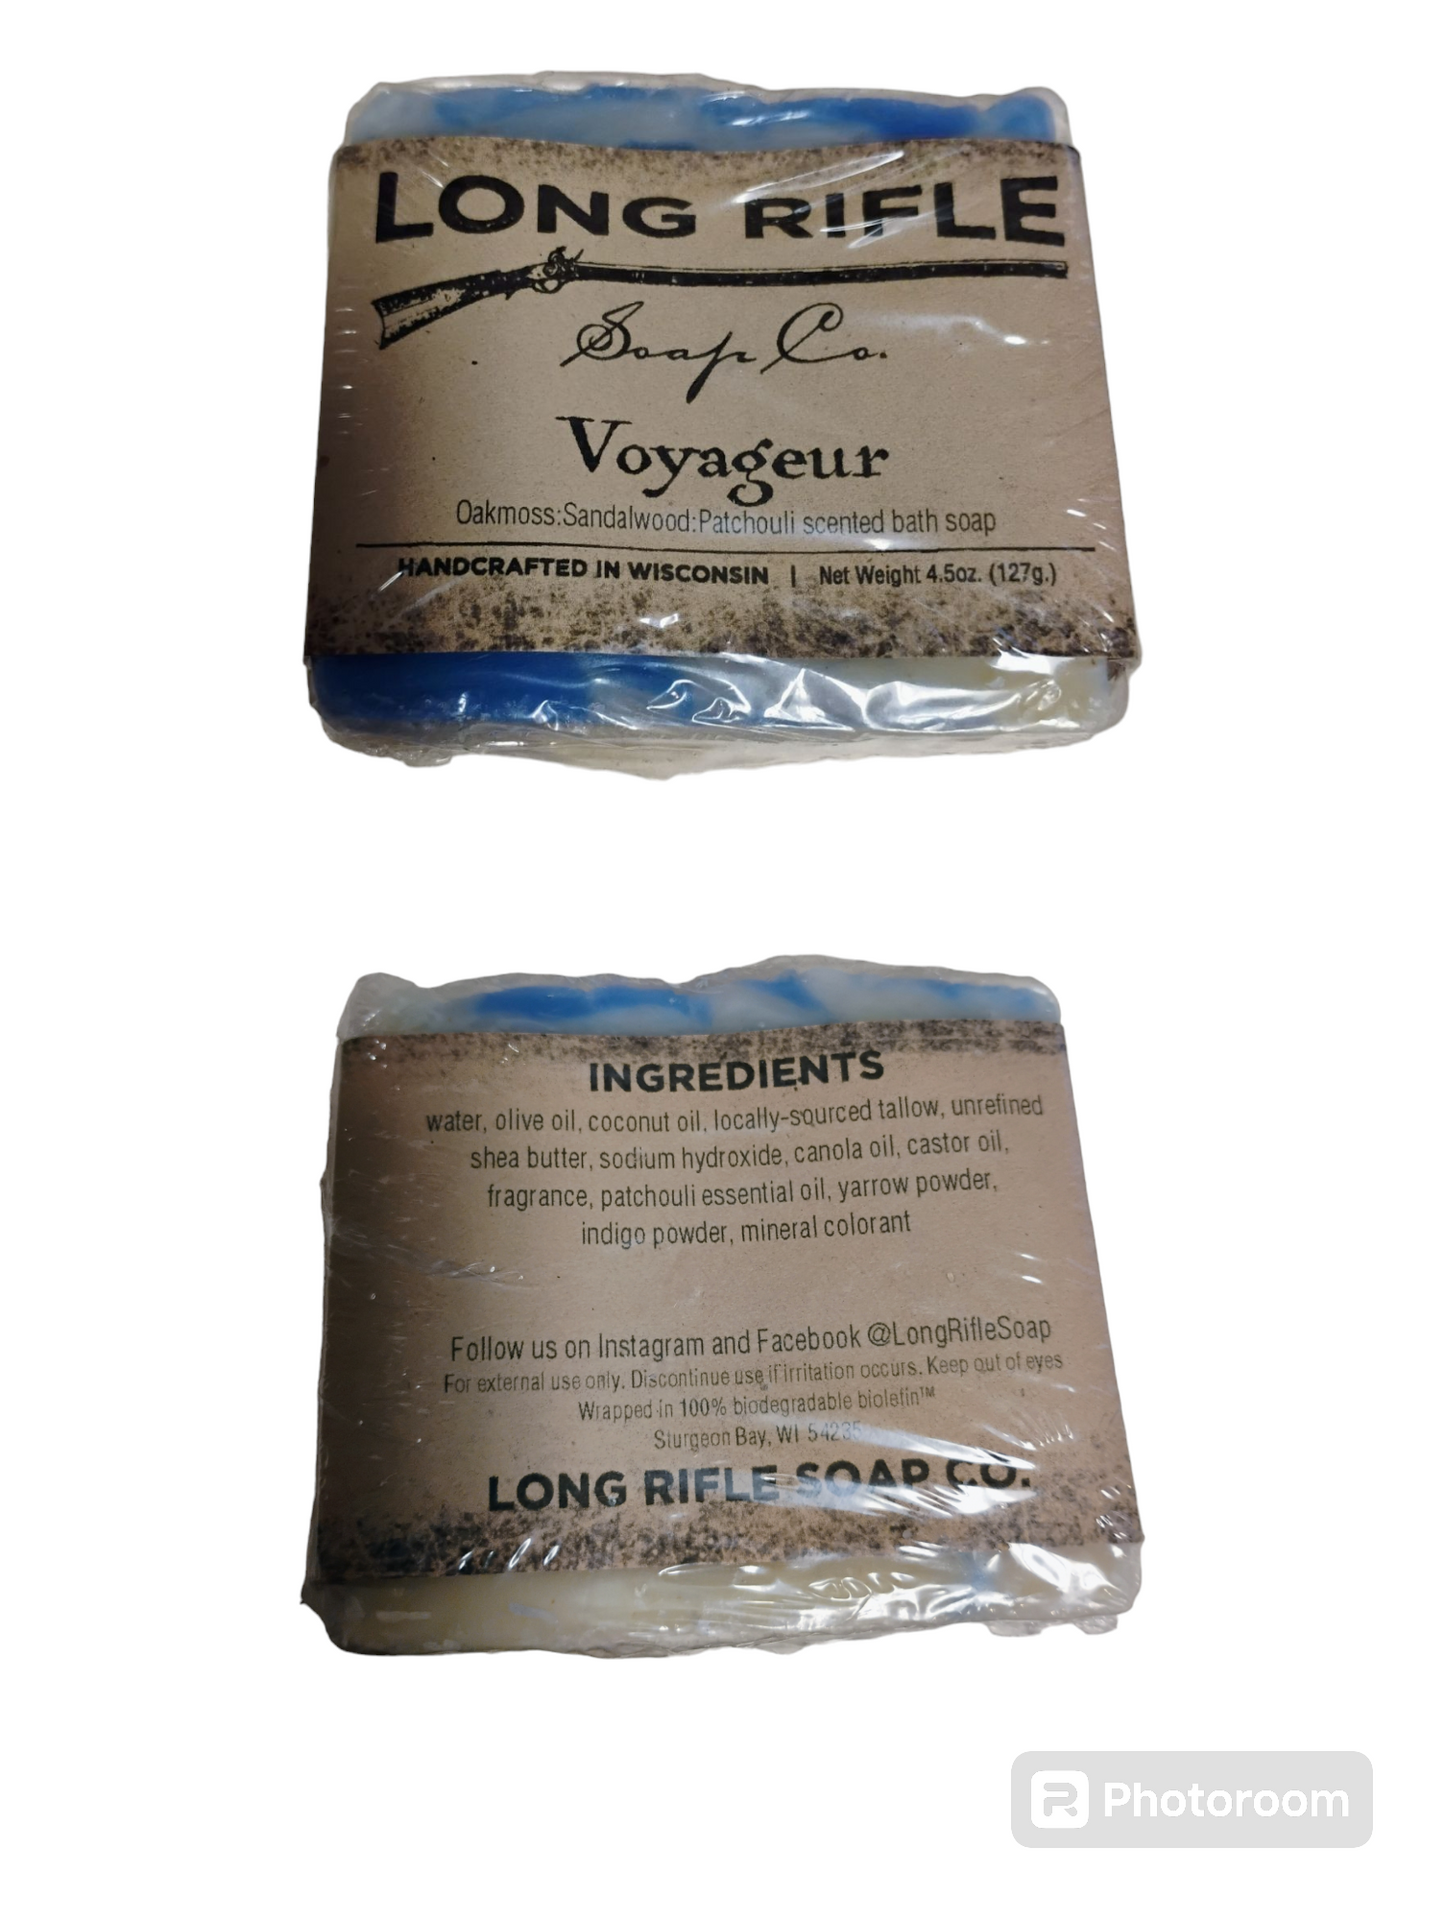 Voyageur Bar Soap